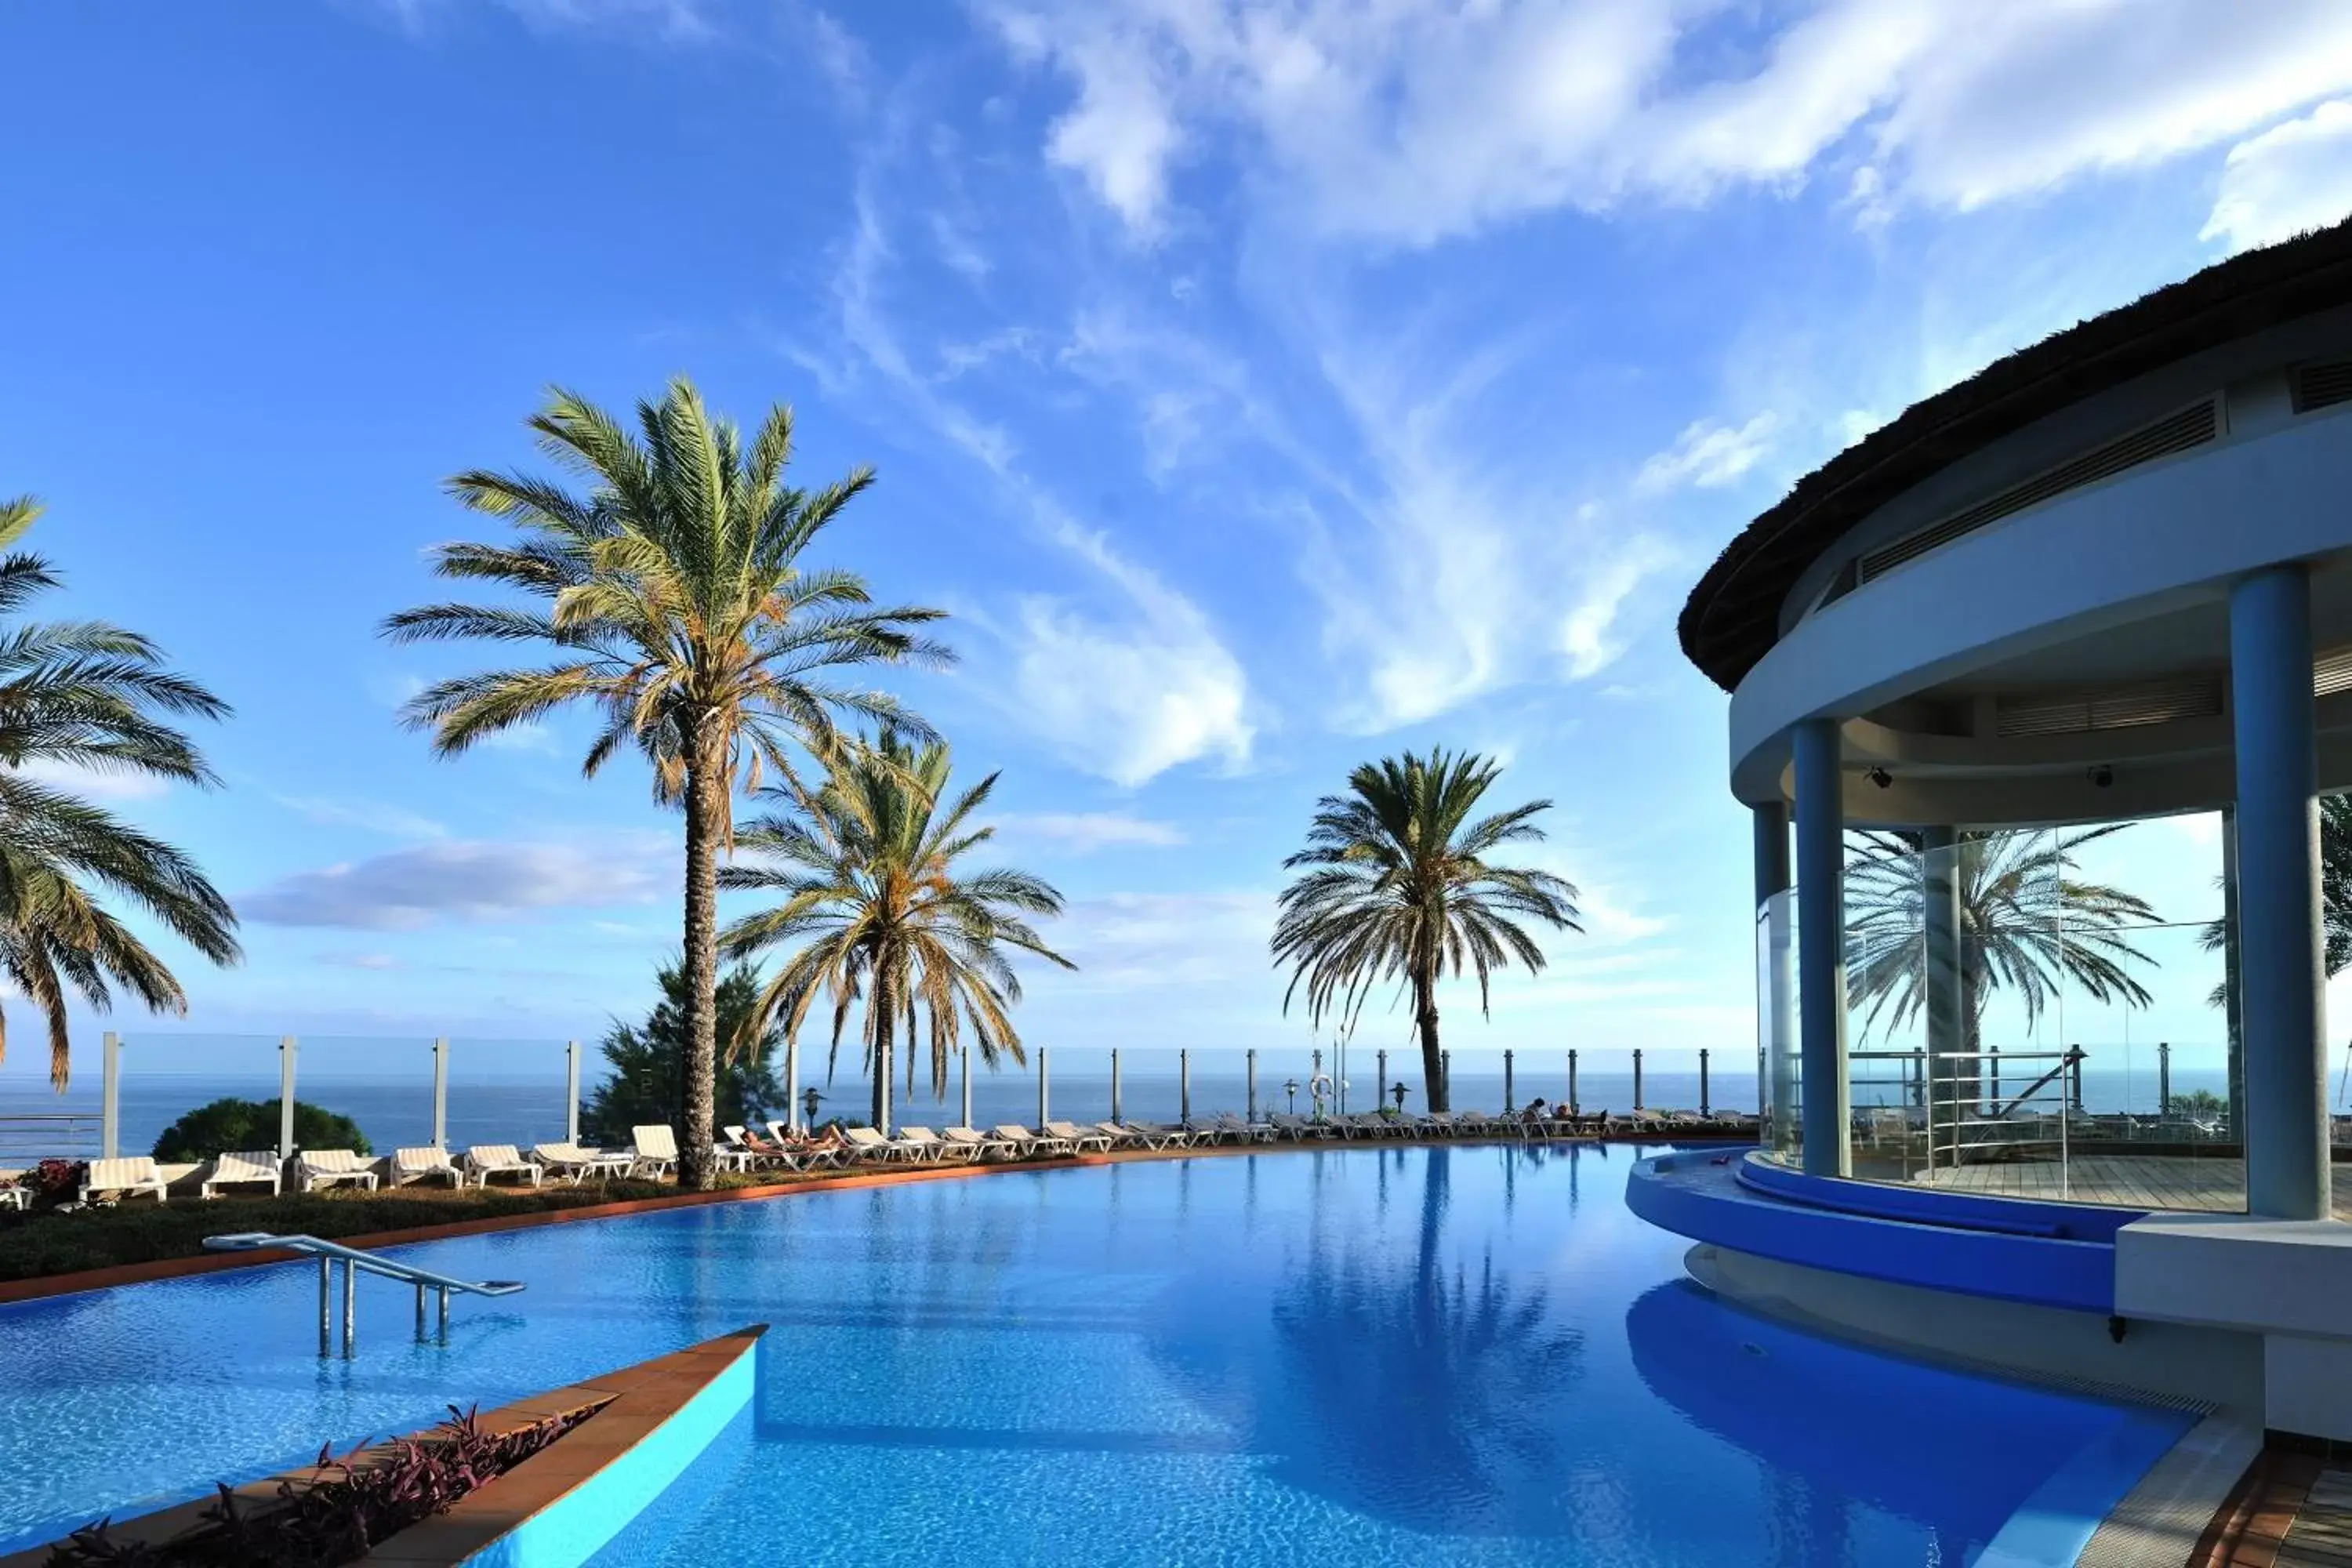 Swimming Pool in Pestana Grand Ocean Resort Hotel